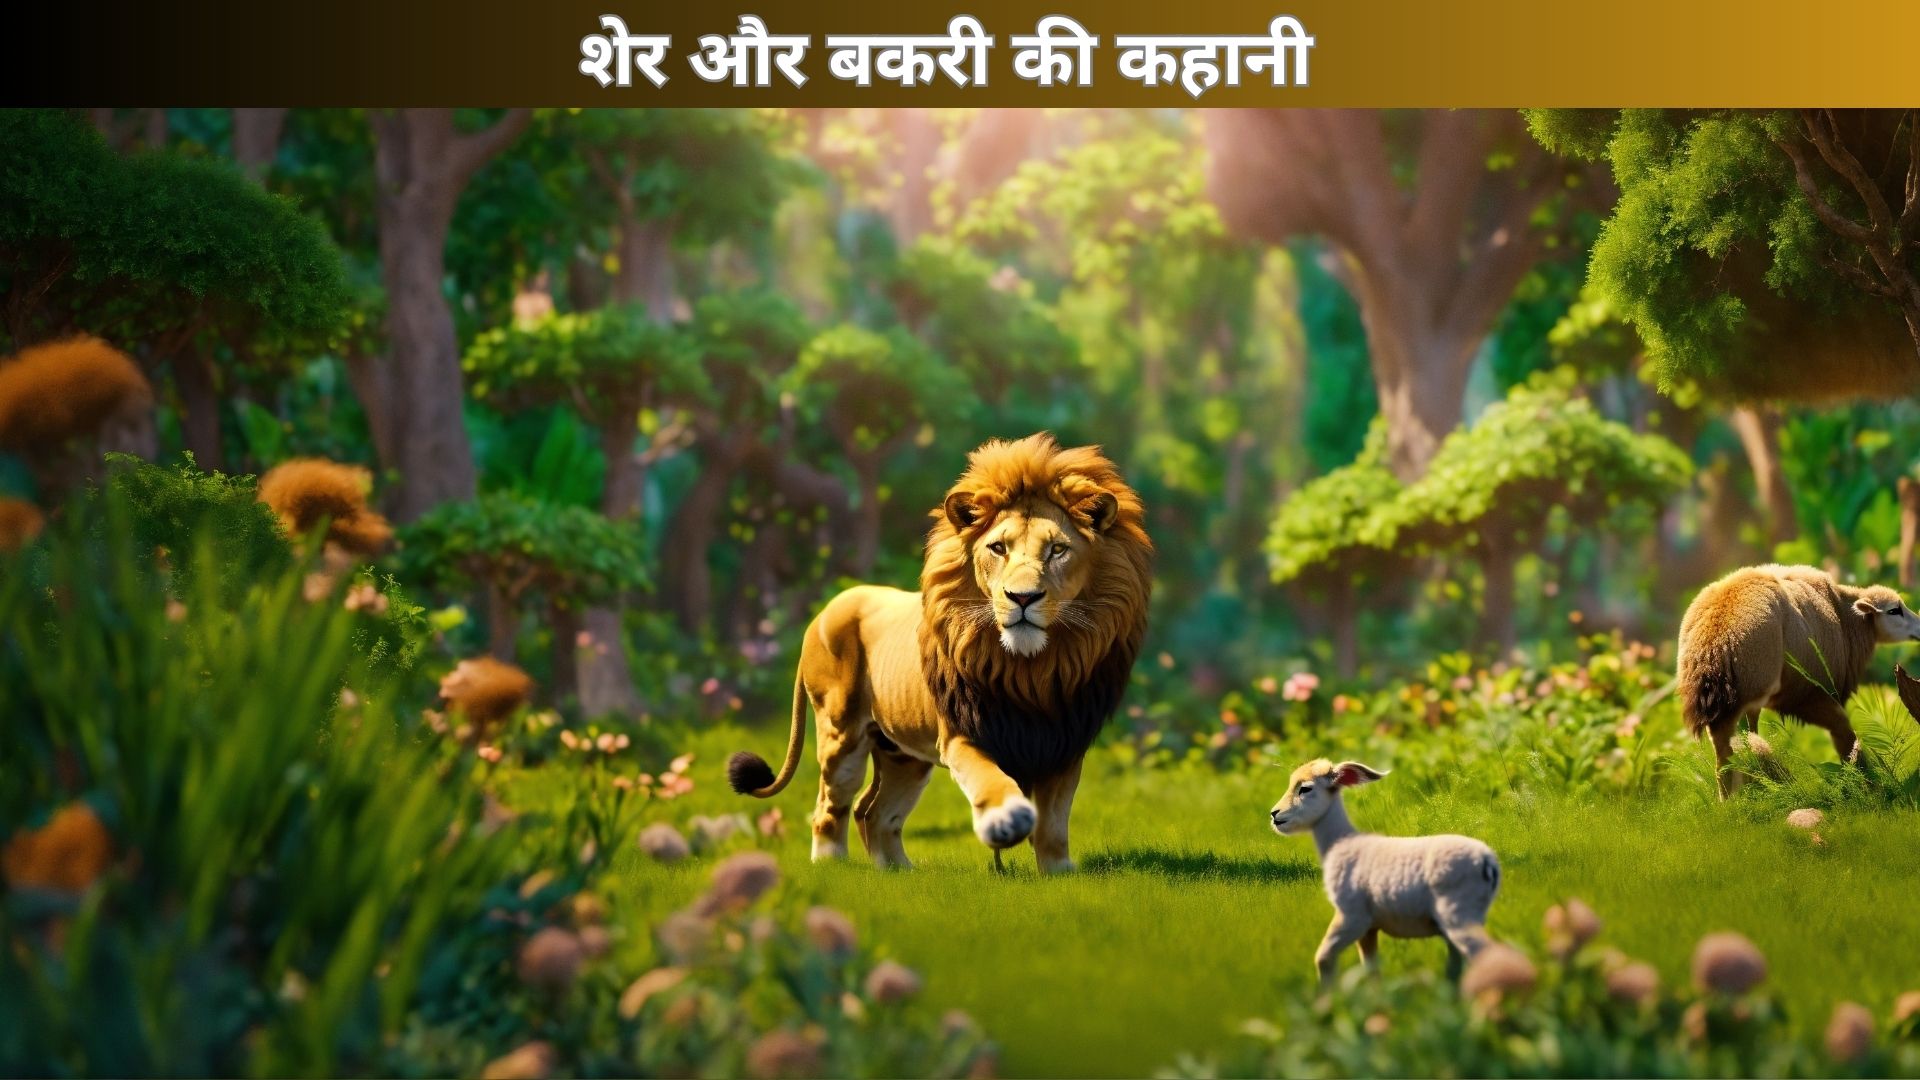 शेर और बकरी की कहानी | Hindi Moral Stories For Kids